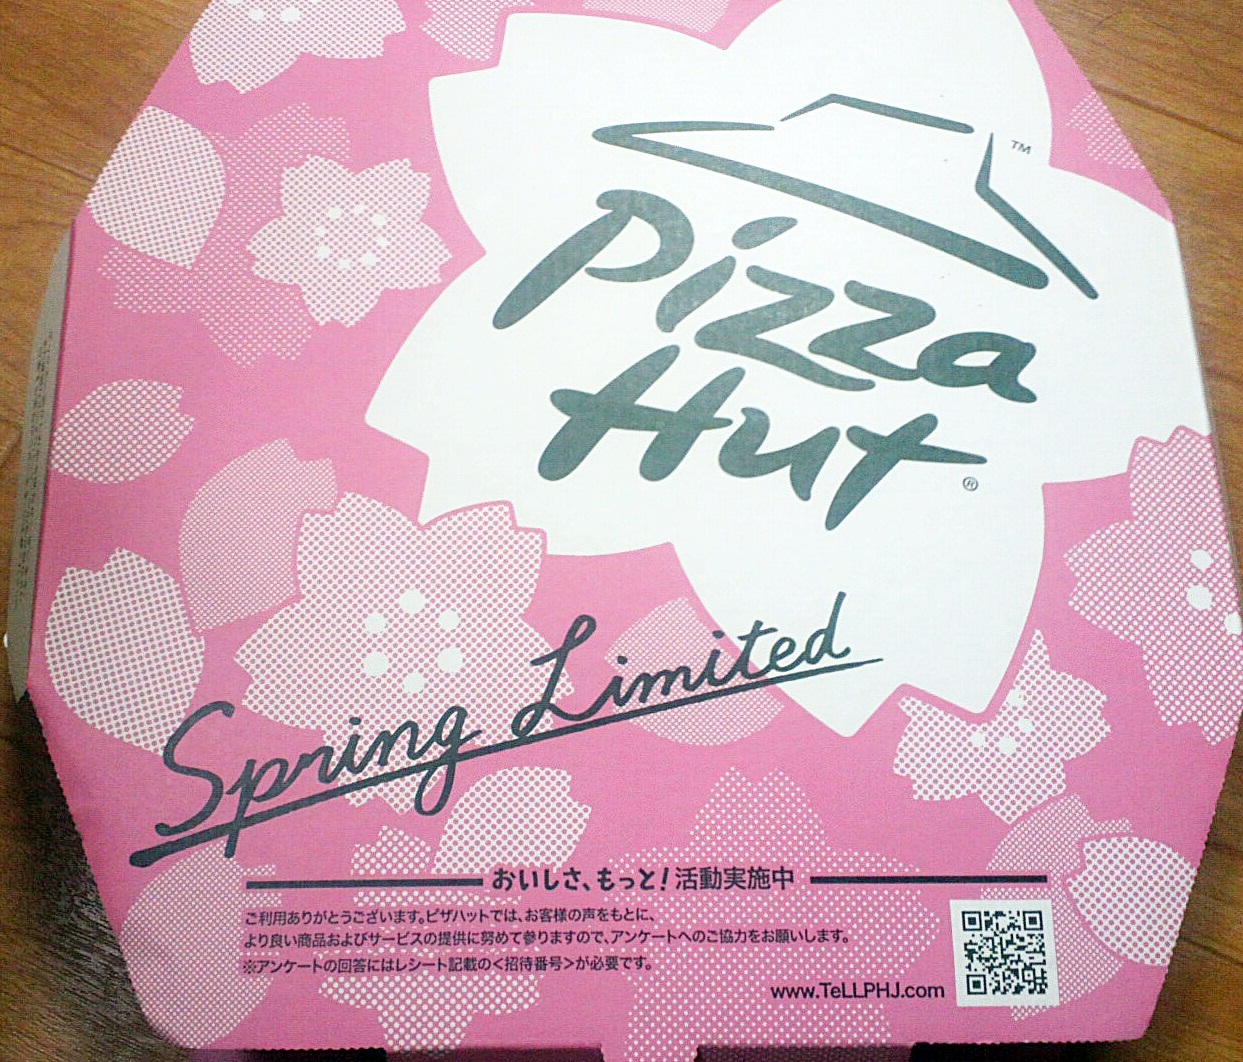 ピザハットの箱、春